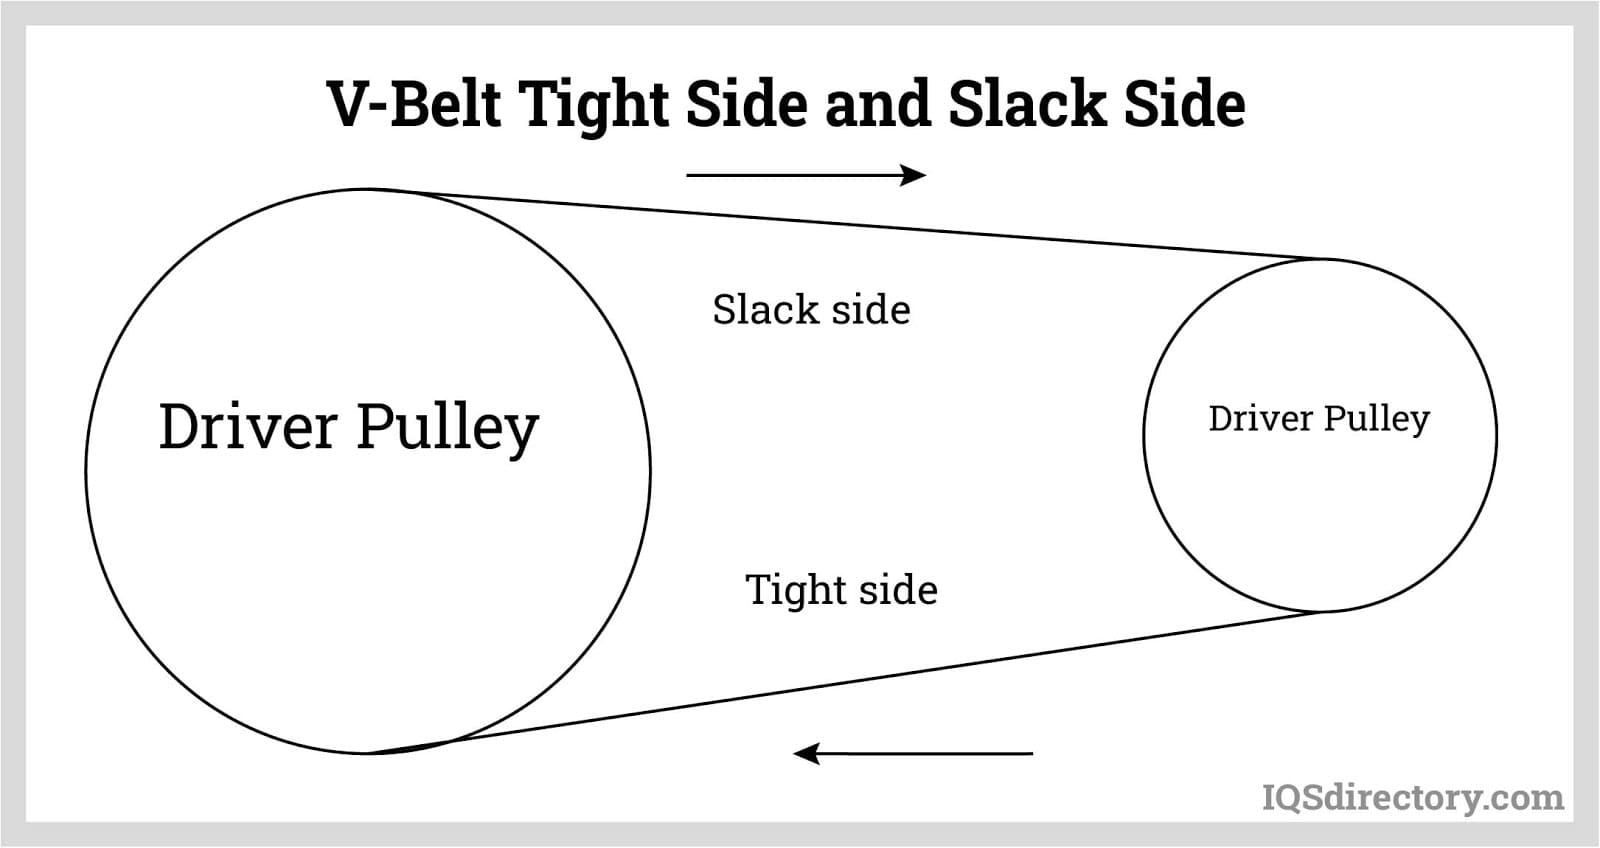 V-Belt Tight Side and Slack Side